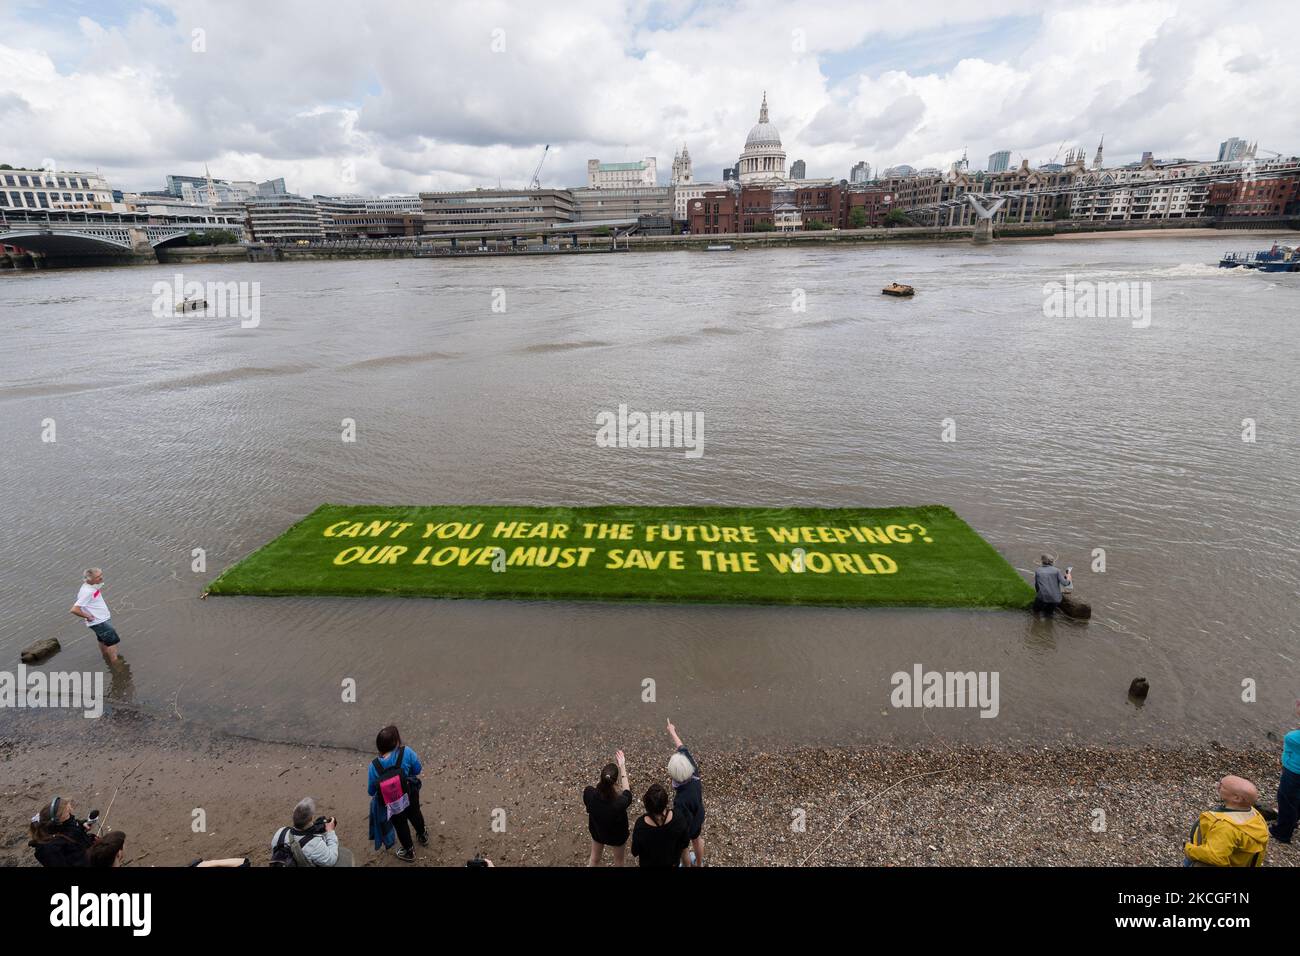 LONDON, VEREINIGTES KÖNIGREICH - 25. JUNI 2021: Ein Banner mit einer auf lebendigem Gras gewachsenen Botschaft, das von XR Writers Rebel in Auftrag gegeben wurde, schwebt am 25. Juni 2021 auf der Themse vor der Tate Modern, um auf die klimatischen und ökologischen Notsituationen in London, England, aufmerksam zu machen. Das von den gefeierten Künstler-Aktivisten Ackroyd & Harvey geschaffene Banner mit einem Appell des Booker-Preisträgers Ben Okri ruft Regierungen auf der ganzen Welt dazu auf, im Hinblick auf den Gipfel COP26 mit Dringlichkeit zu handeln, um den durch die globale Erwärmung verursachten Klima- und ökologischen Kollaps zu verhindern. (Foto von Wiktor Szymanowicz/NurPhoto) Stockfoto